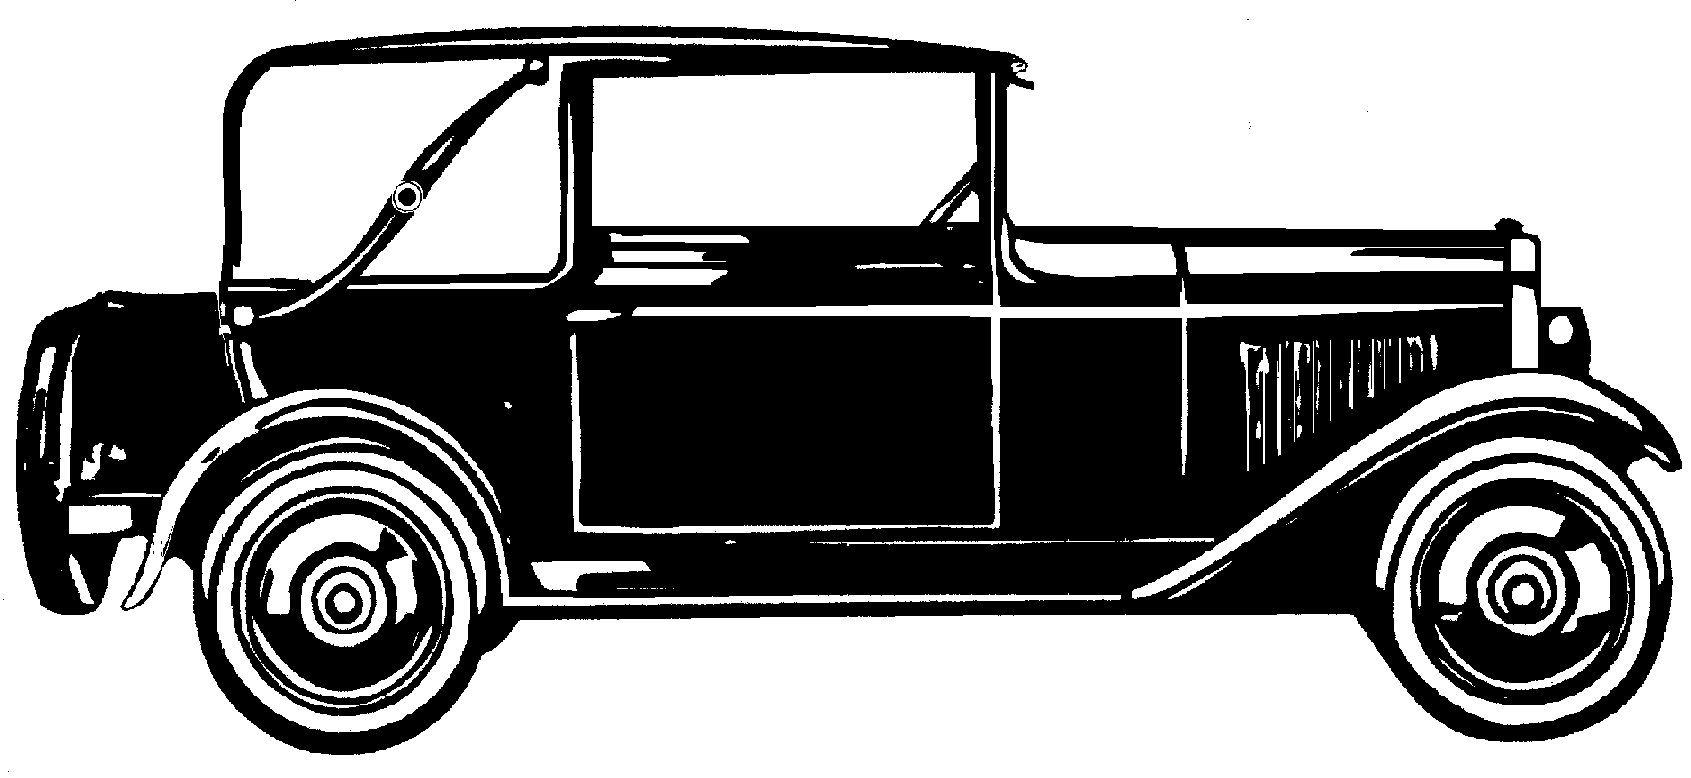 Car NSU Cabriolet 7-34 1928